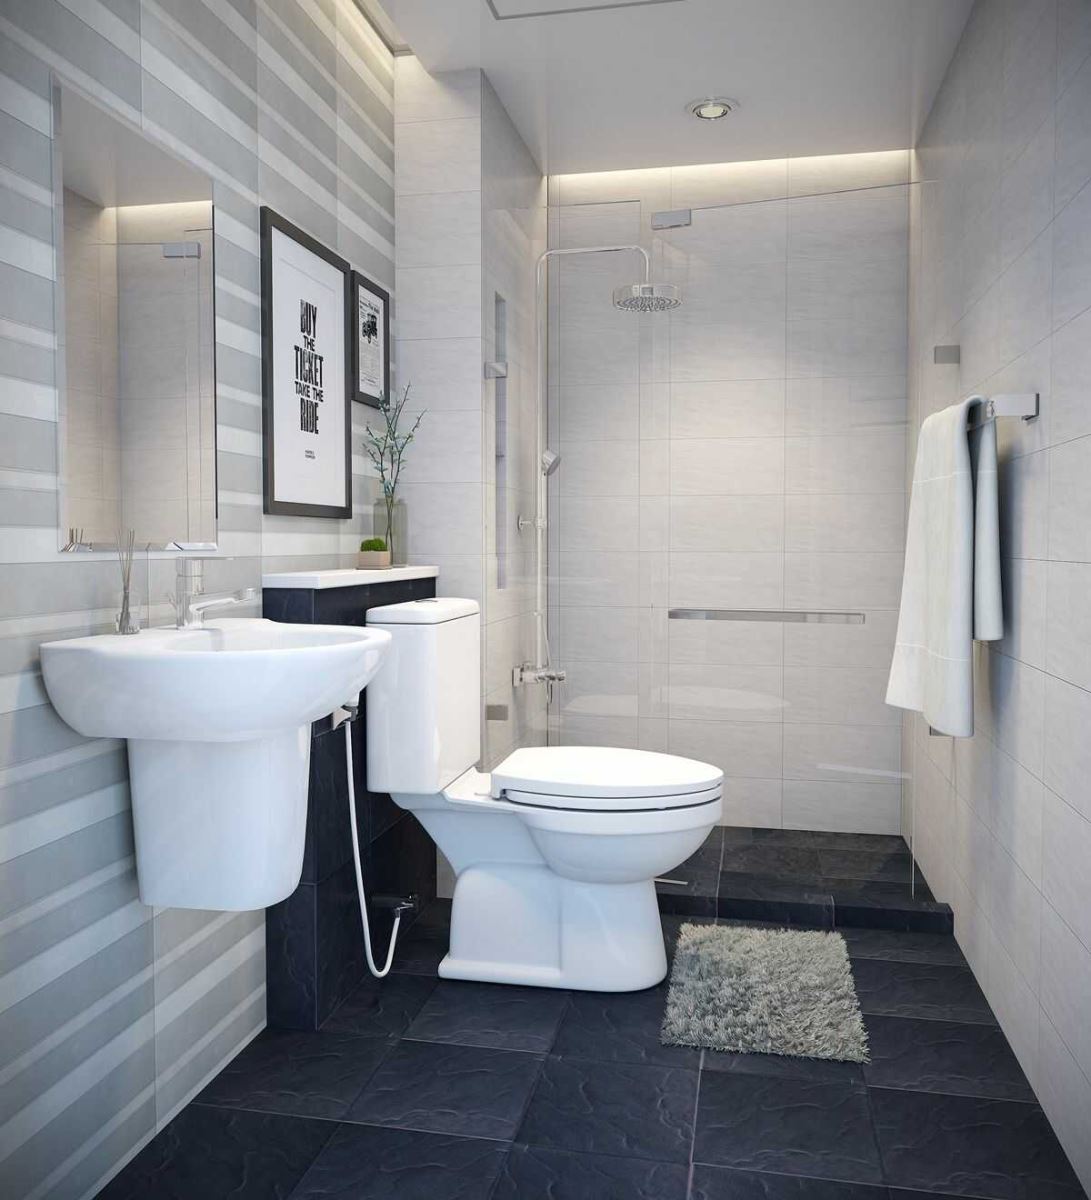 Nhà vệ sinh 1m2 đẹp: Bạn đang cần tìm kiếm giải pháp cho nhà vệ sinh có diện tích hạn chế? Thiết kế nhà vệ sinh 1m2 đón đầu xu hướng thịnh hành với những kiểu dáng đa dạng, hiện đại và sang trọng. Hãy khám phá những thiết kế đẹp và làm mới không gian nhà vệ sinh của bạn.